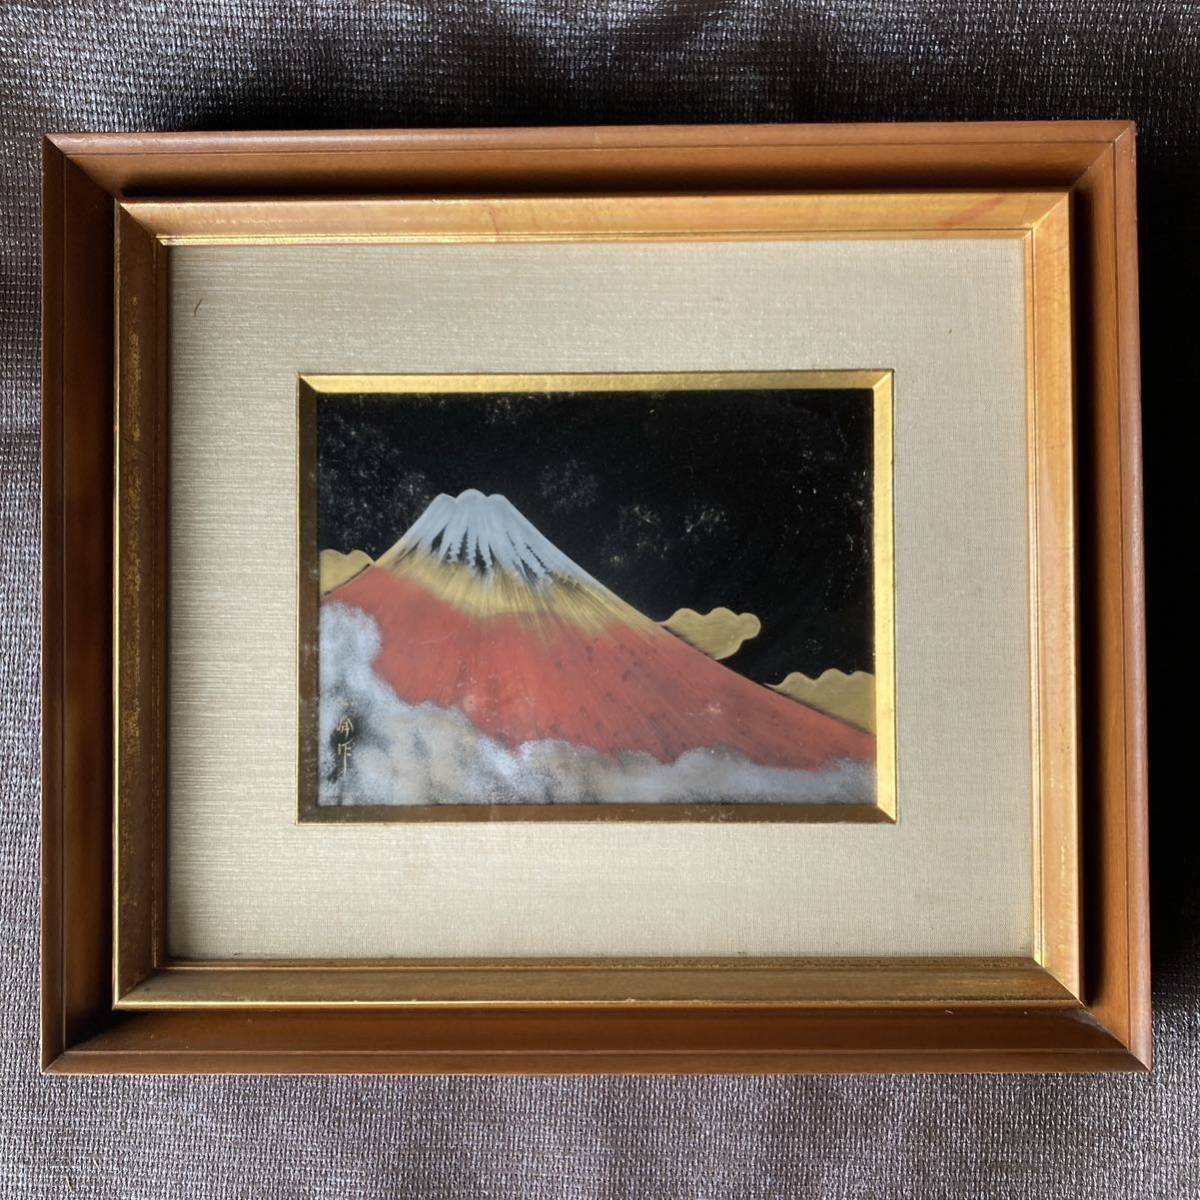 شروق الشمس في جبل فوجي تارومي نادي ماسامين دايمارو للفنون الحرف التقليدية جبل فوجي الأحمر لوحة يابانية إطار اللوحة المدخل الداخلي تعويذة الحظ حرف الحظ السعيد, حرفة, فن ورنيش, آحرون